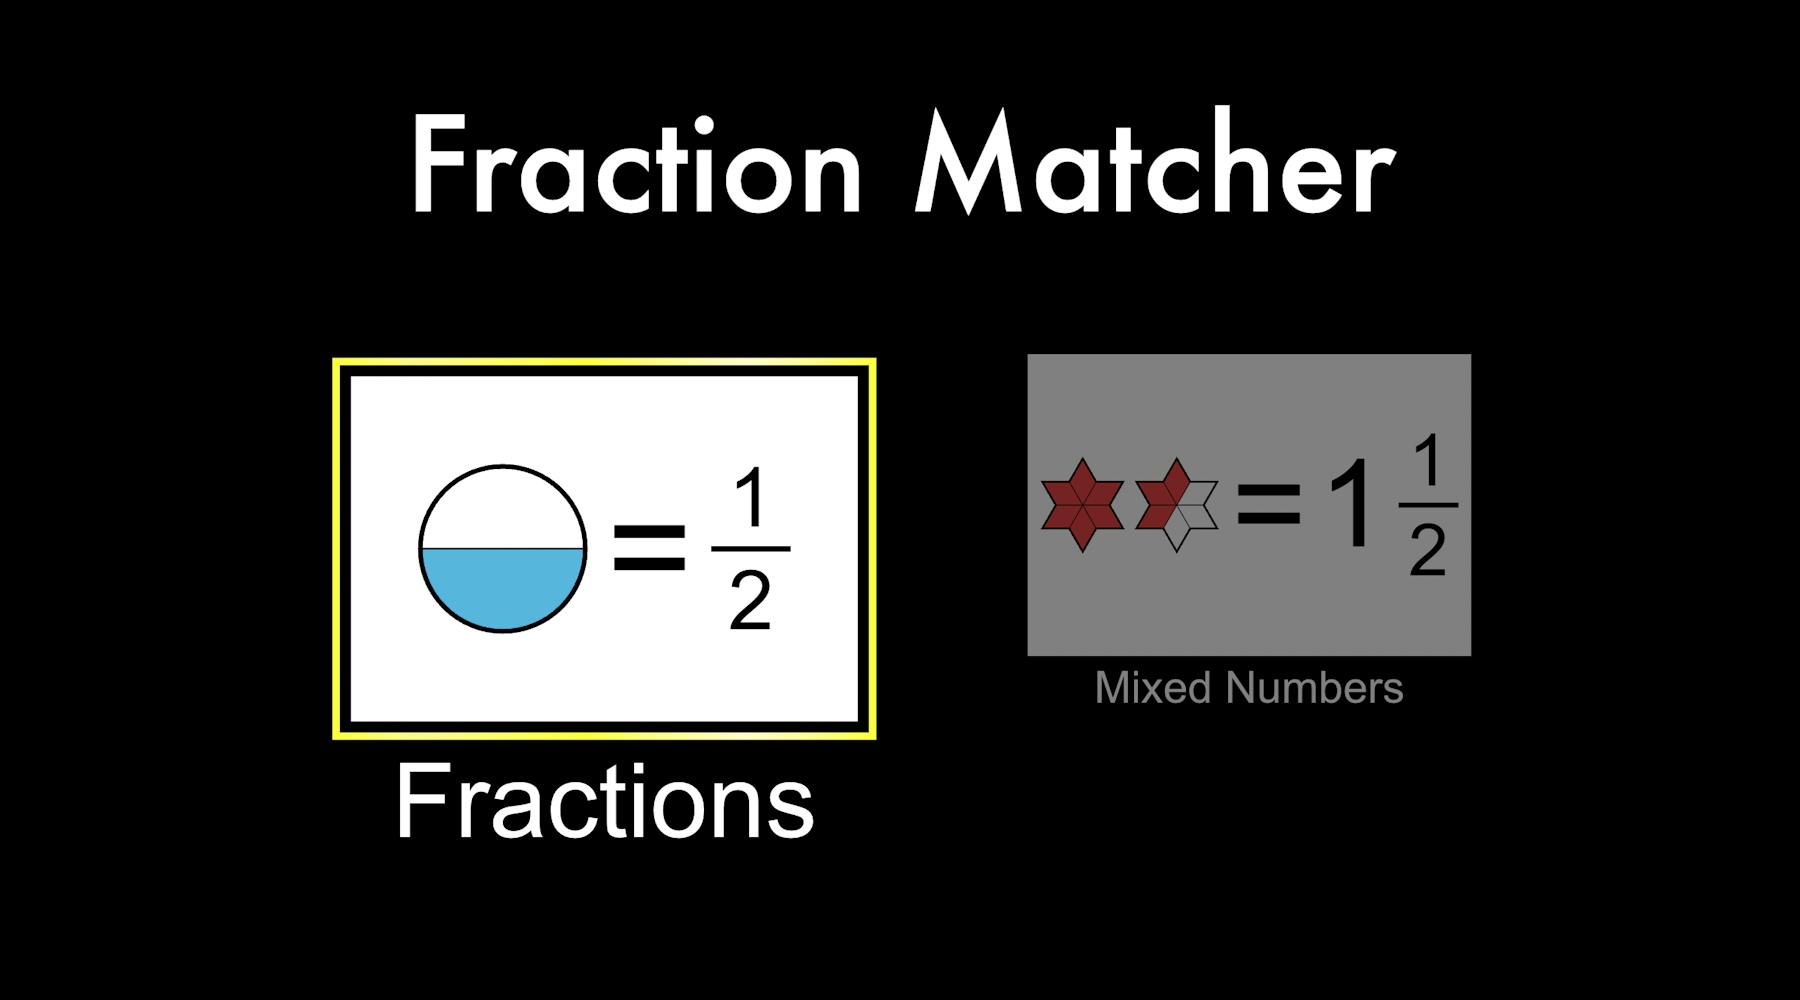 Fraction matcher screenshot.